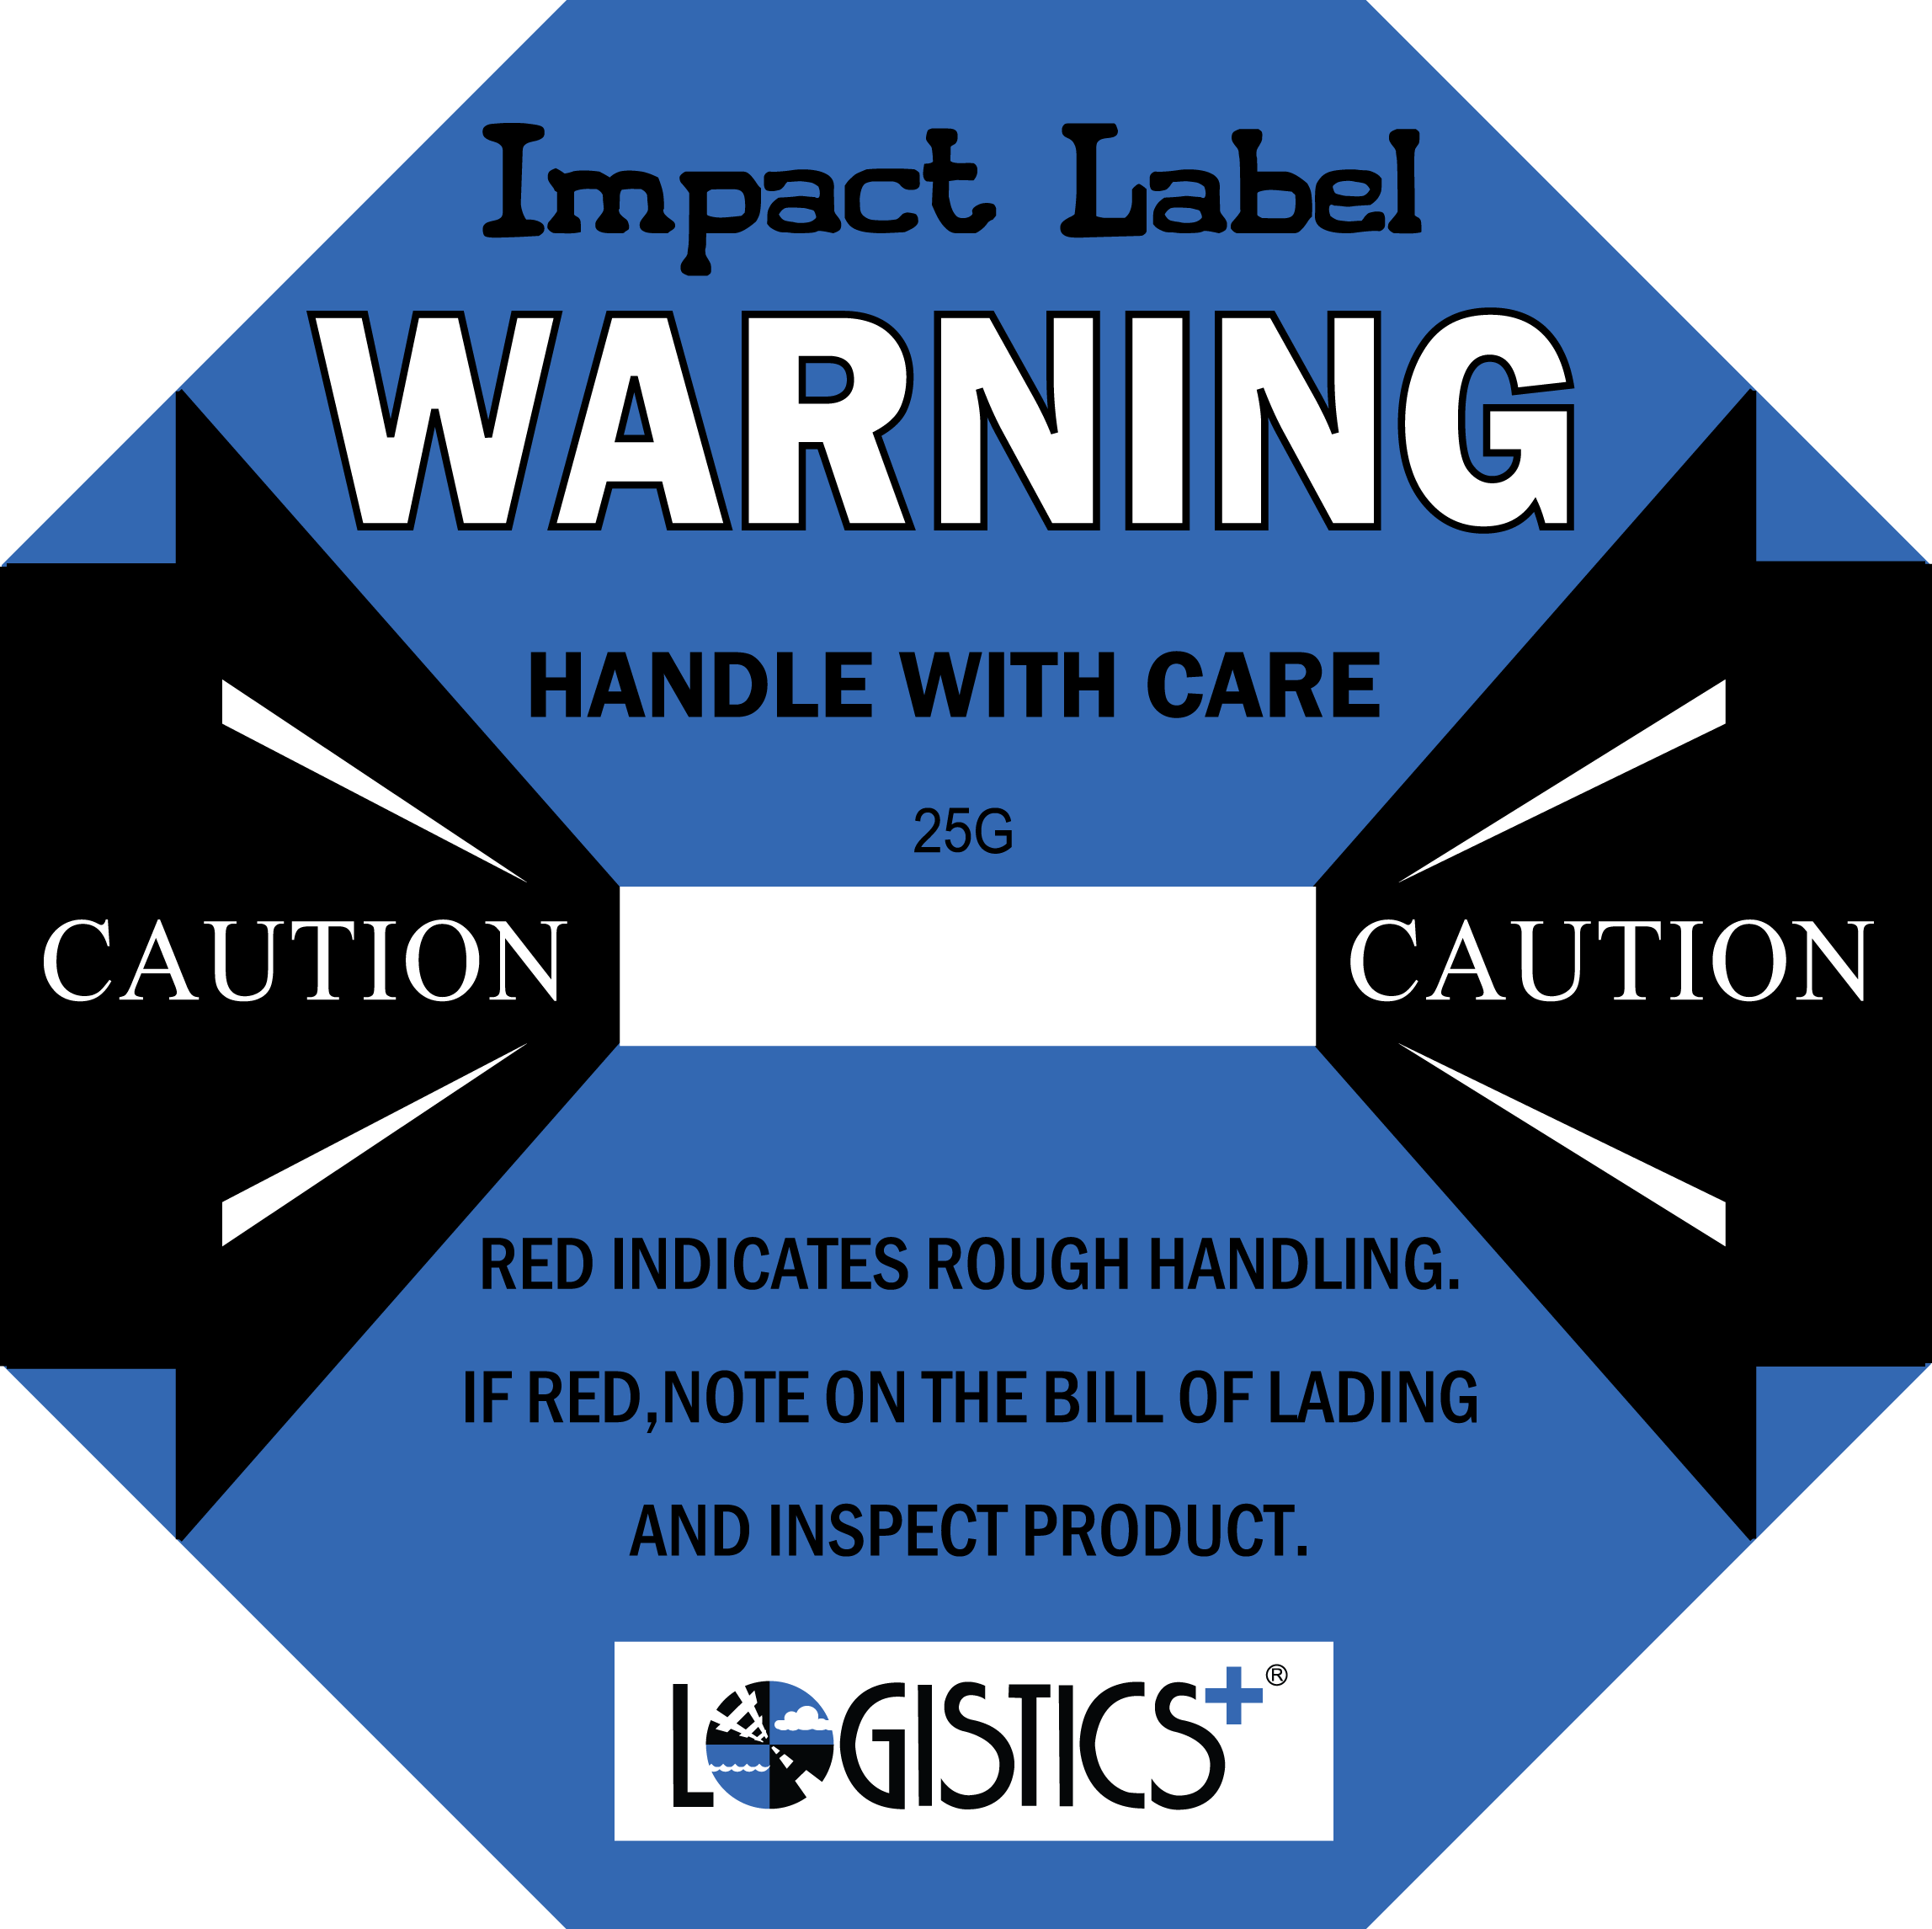 New Logistics Plus Impact Labels Alert Potential Concealed Damage